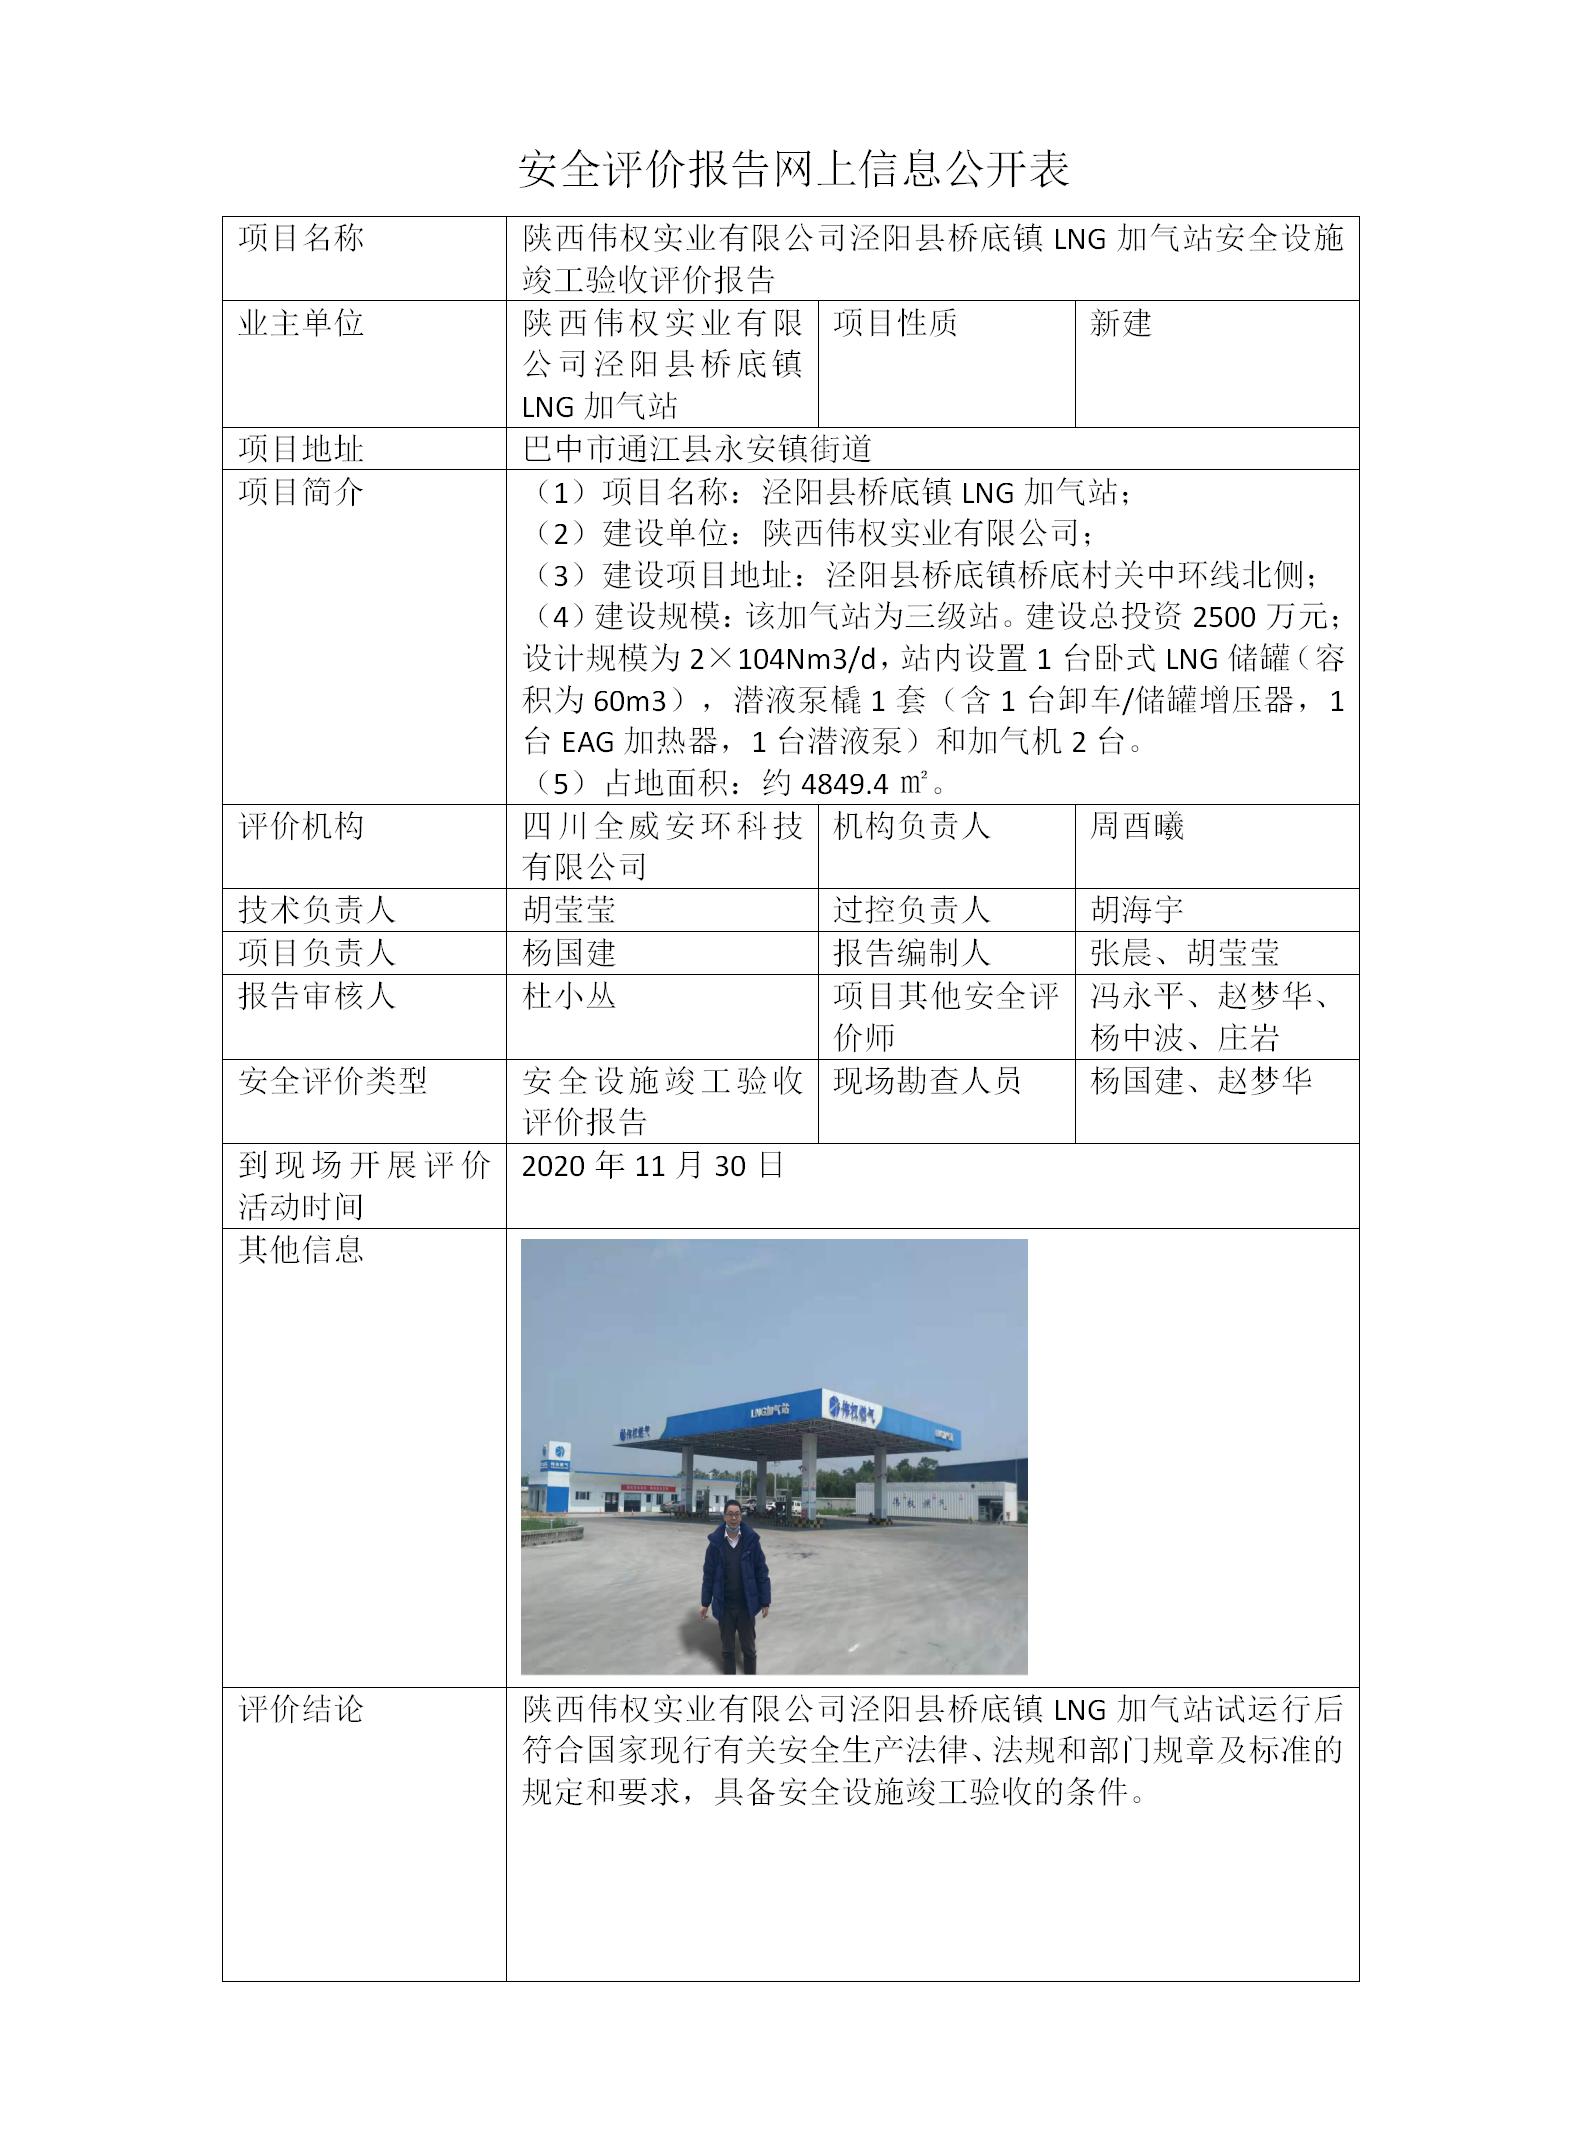 陕西伟权实业有限公司泾阳县桥底镇LNG加气站安全设施竣工验收评价报告